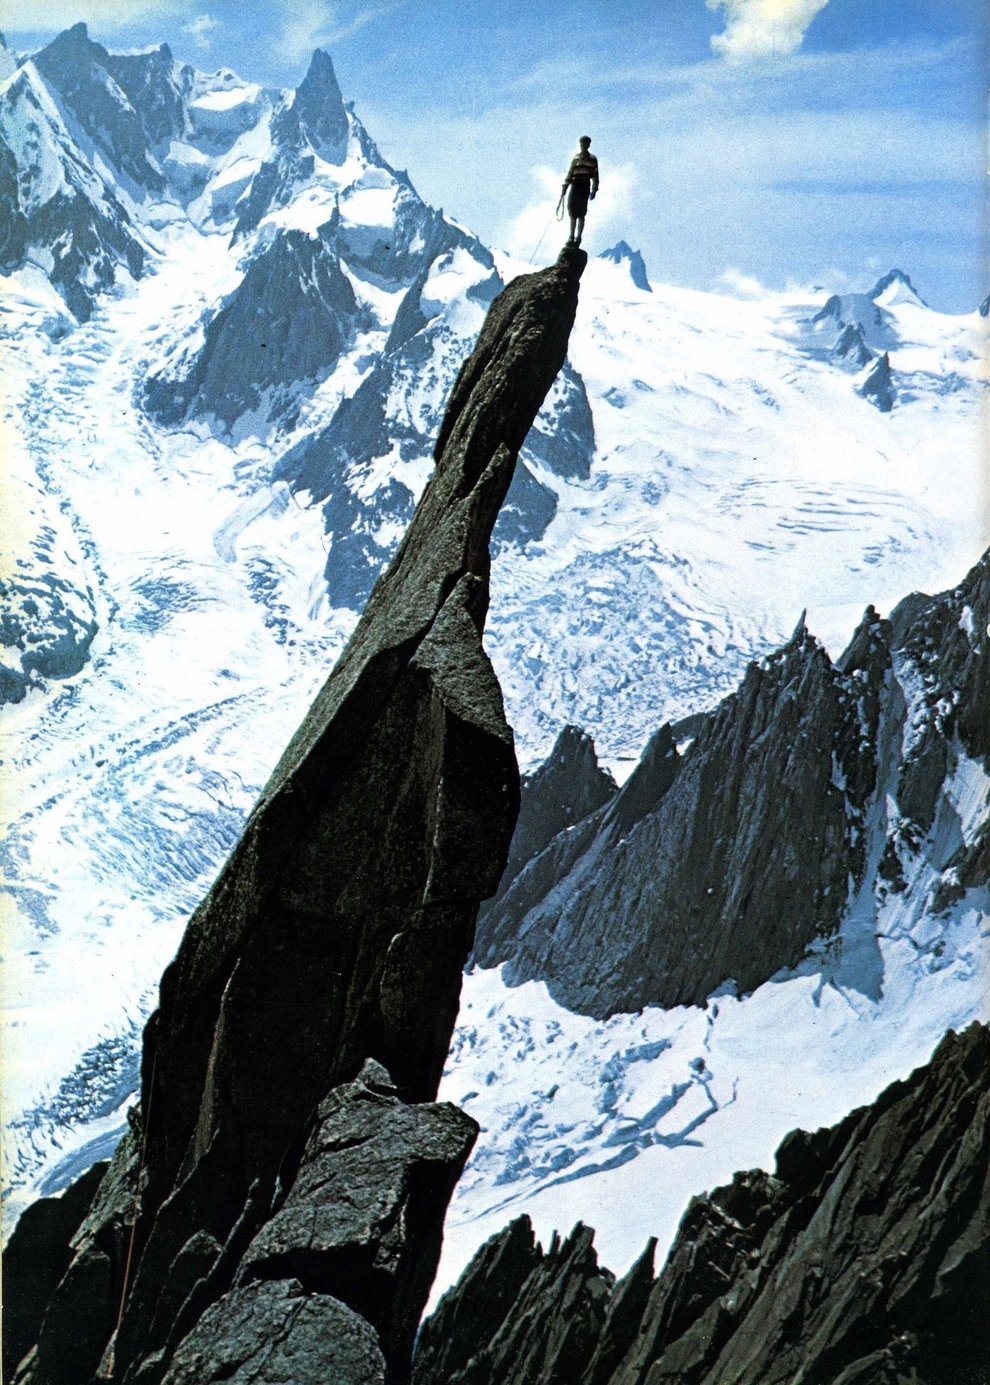  легендарный французский альпинист  Гастон Ребуффа (Gaston Rébuffat) стоящий на вершине пика Aiguille de Roc (в массиве Монблан), после того как он поднялся по жандарму на Юго-Восточном фланге пика. Фото - из книги автобиографии Гастона Ребуффа  изданной в Третино в 1996 году под названием  “La montagna è il mio mondo” (Горы - мой мир)